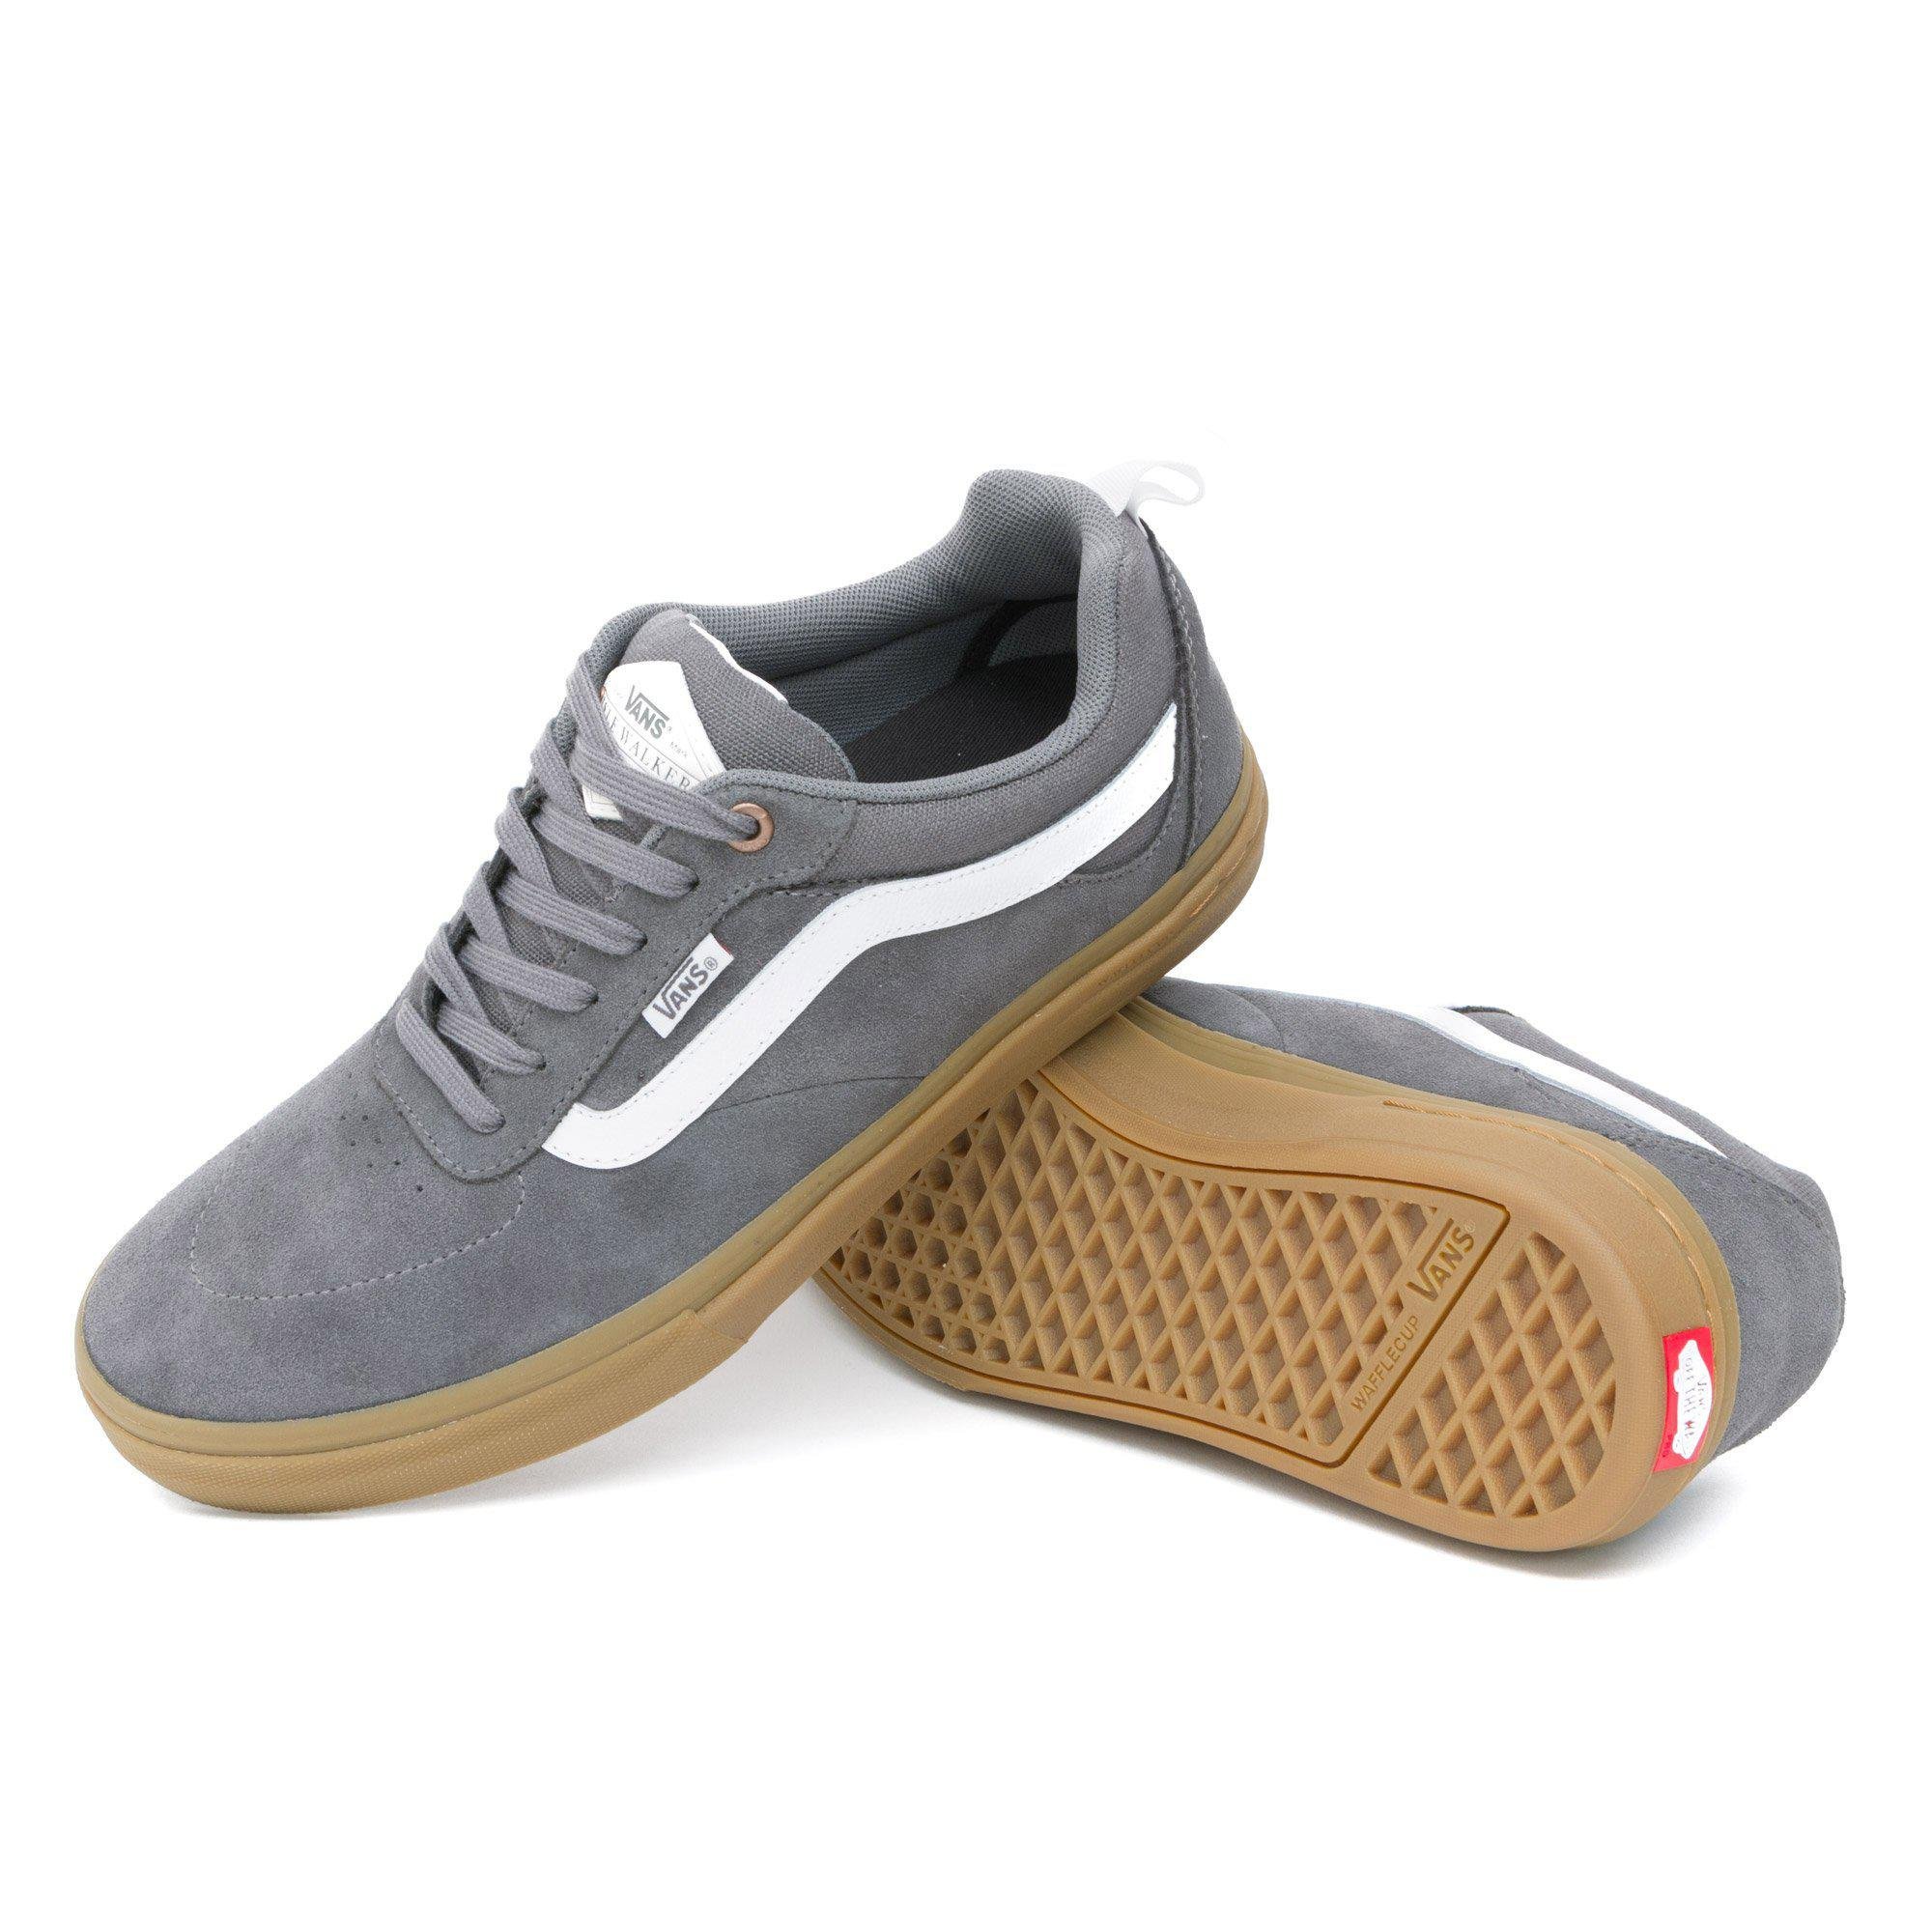 Vans Kyle Walker Shoes in Grey (Gray 